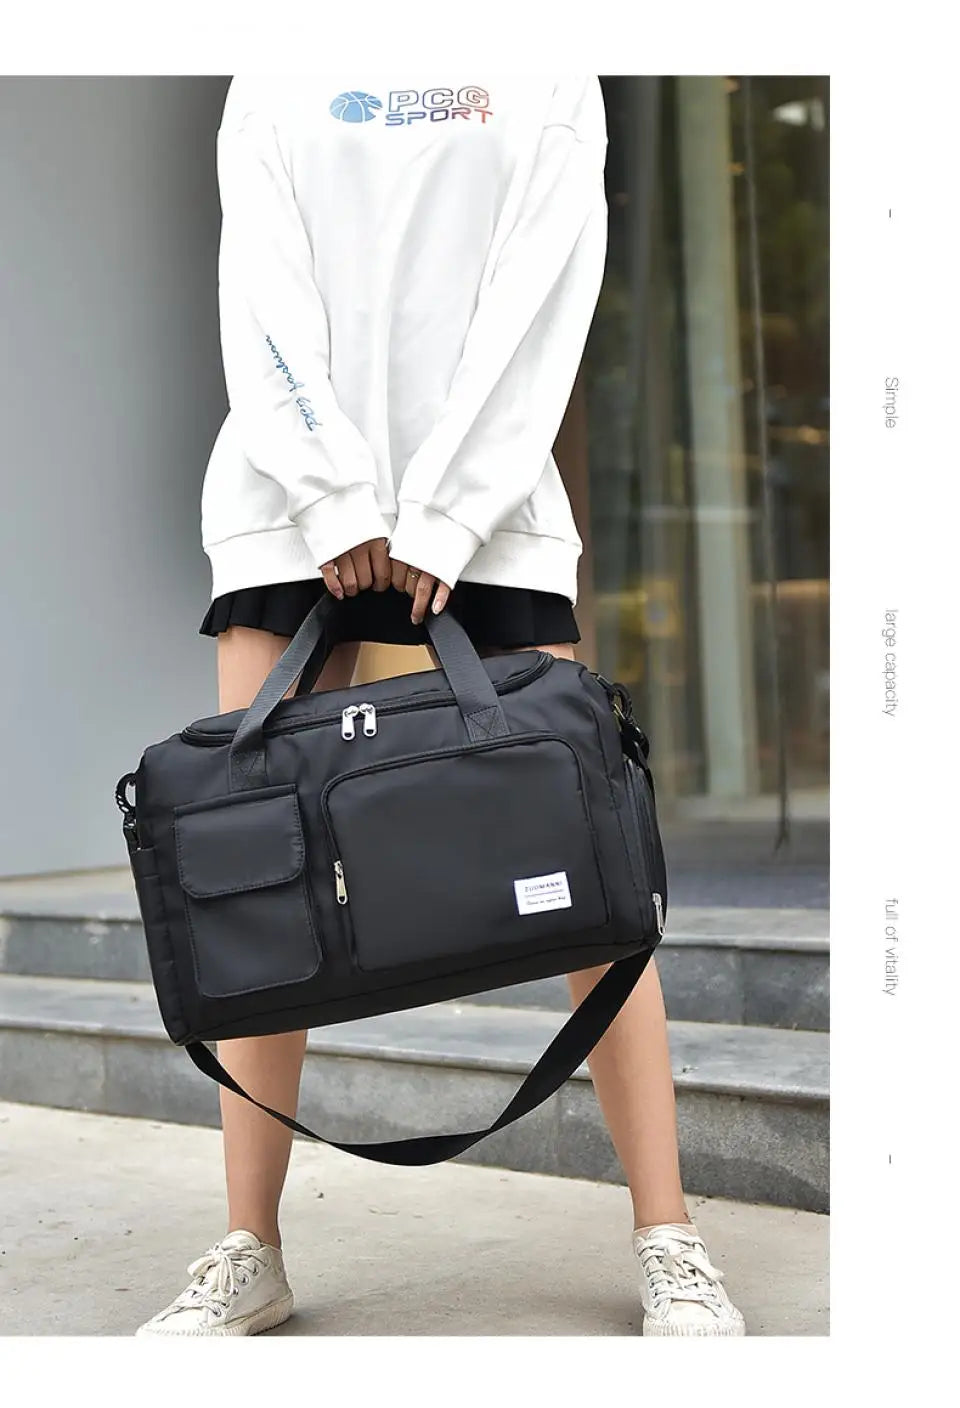 WeekenderWise Carry-On Duffle Bag